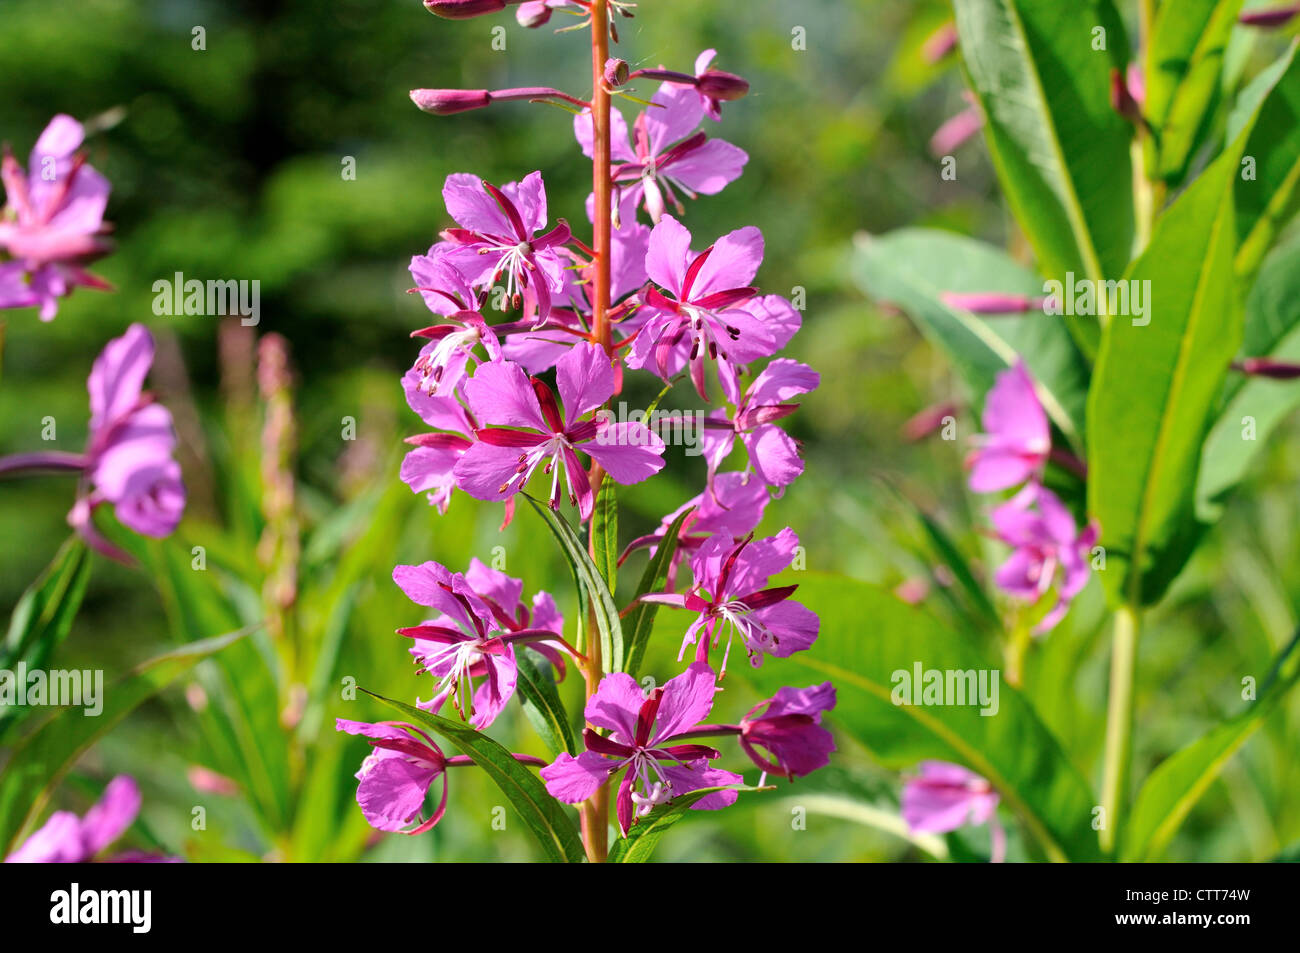 Nahaufnahme Bild von Weidenröschen Blumen, Alaska Zustandblume. Denali Nationalpark und Reservat, Alaska, USA Stockfoto